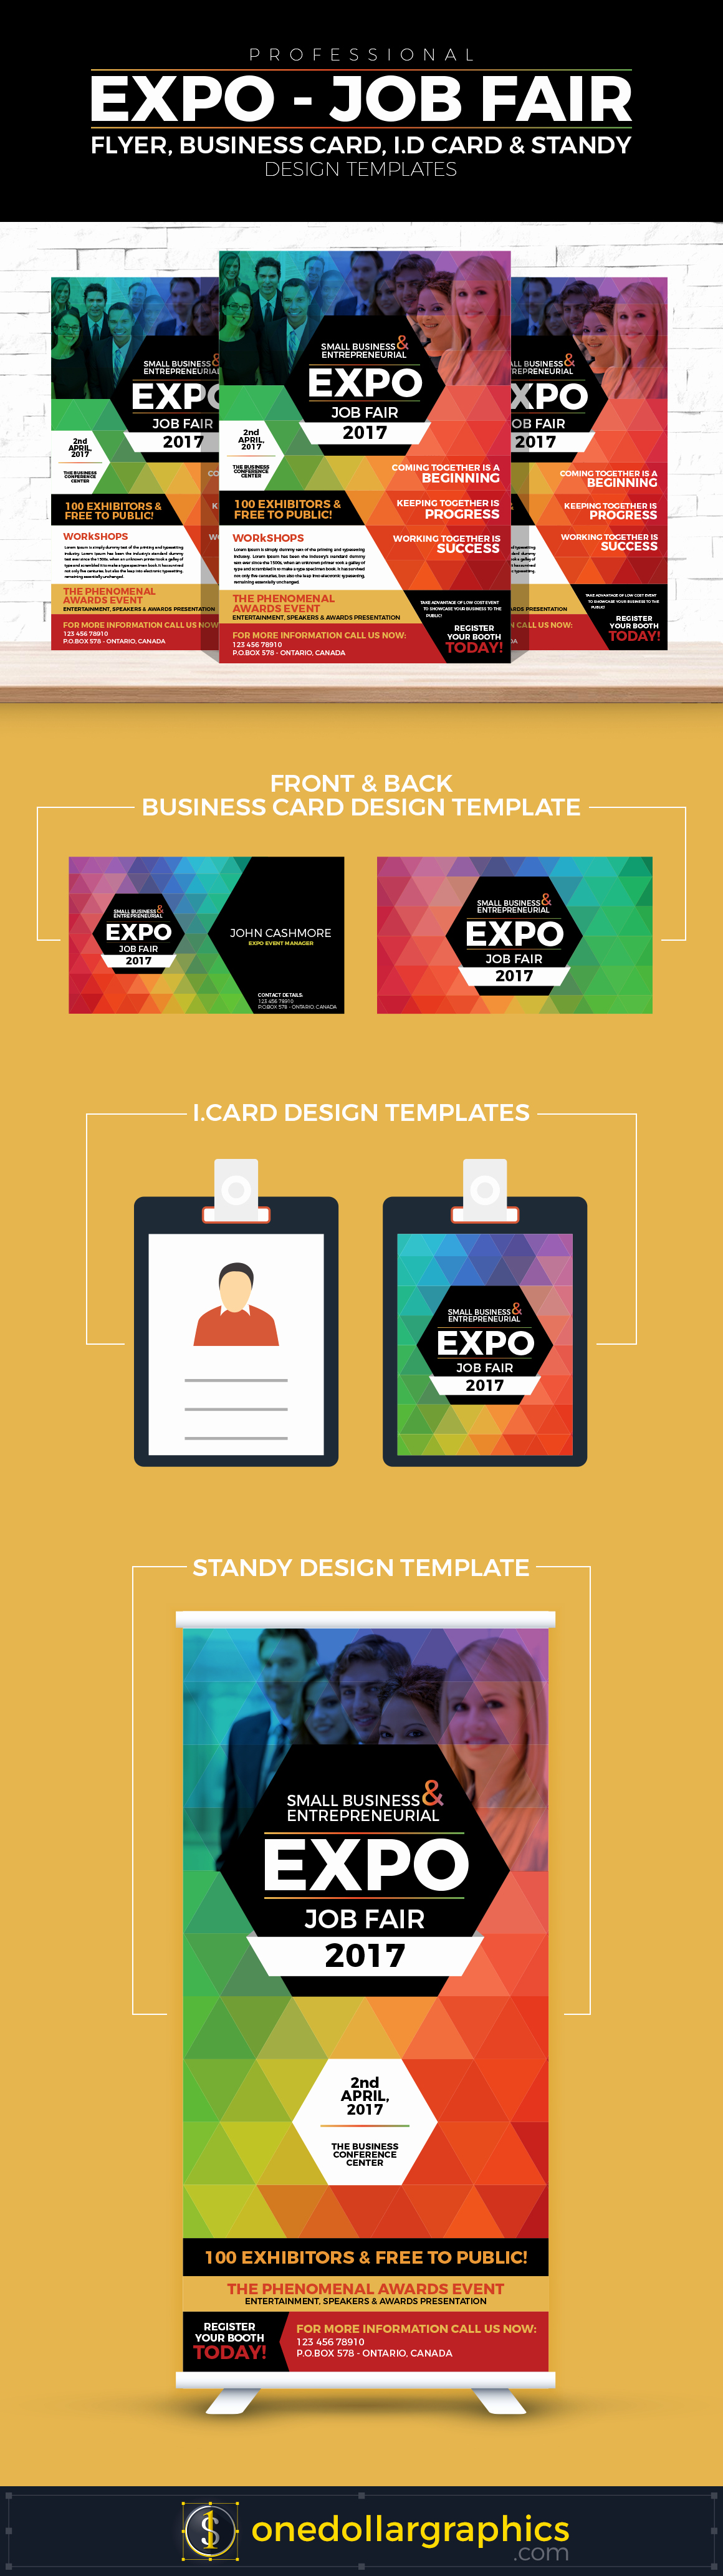 Professional Expo Job Fair Flyer Business Card I D Card